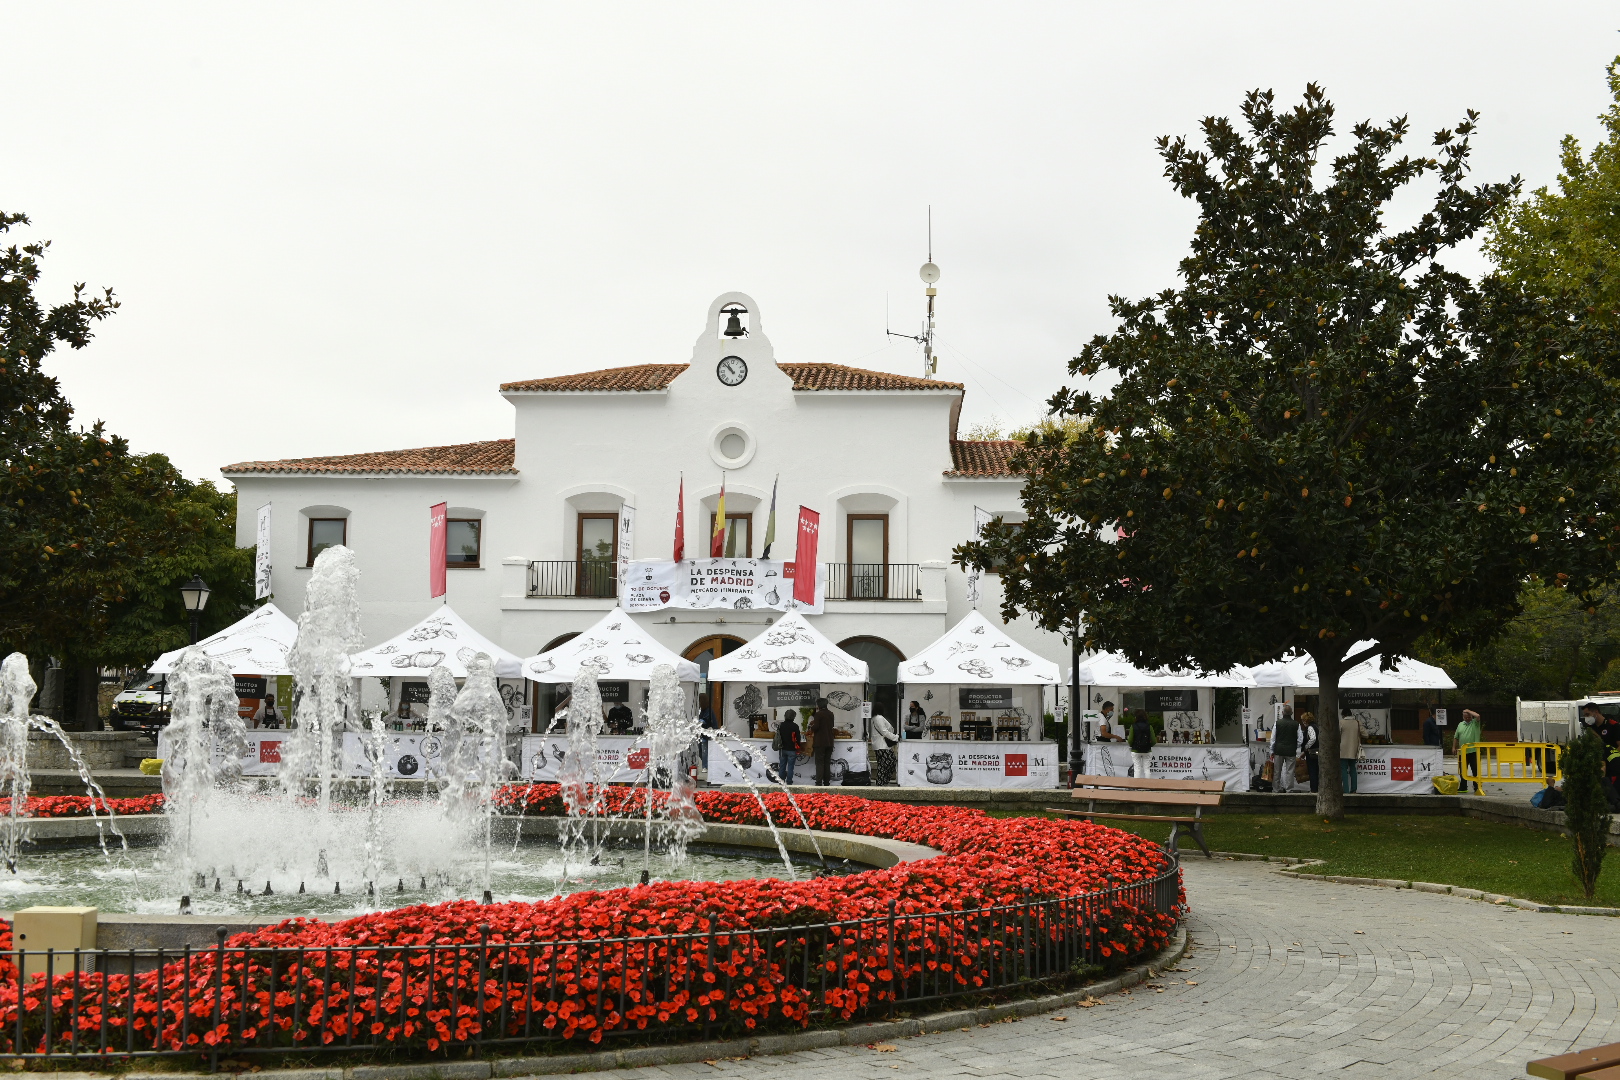 Imagen de la fuente de la plaza de España y puestos del mercado itinerante.